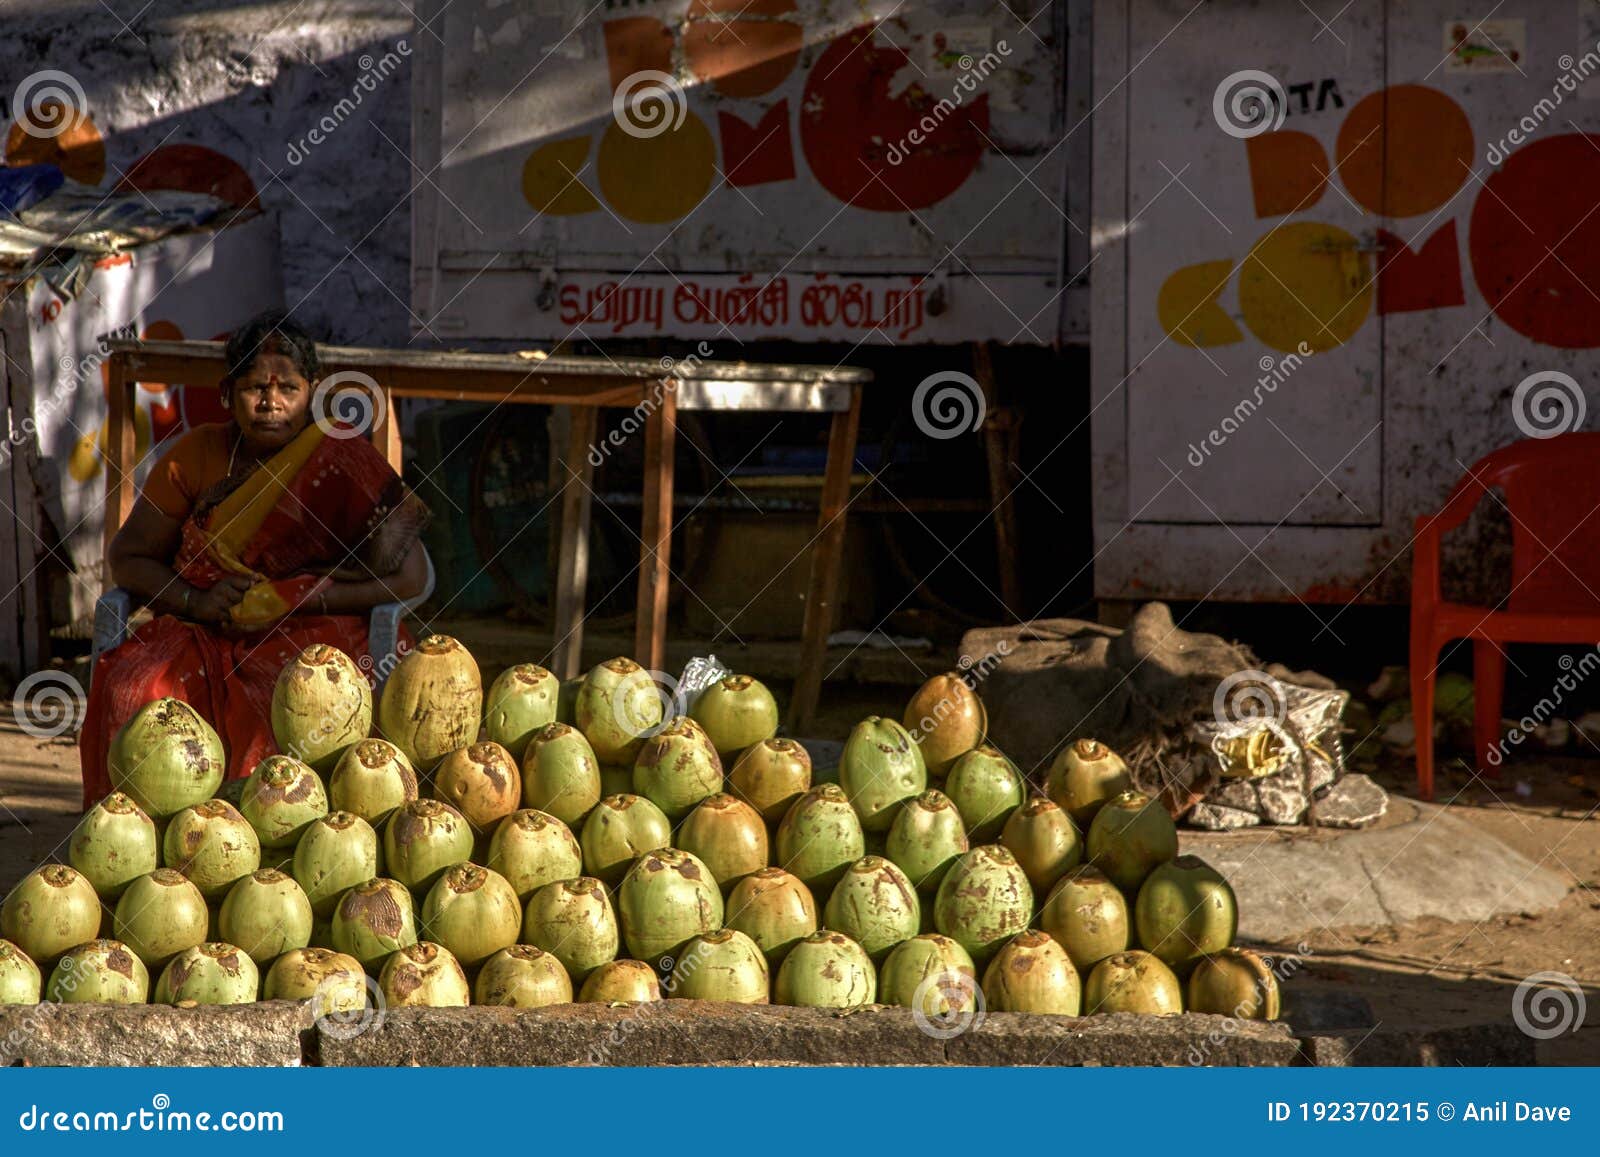 在树荫下五颜六色的路边摊卖椰子和宗教物品的妇女 图库摄影片. 图片 包括有 路旁, 街道, 聚会所, 迈索尔 - 217860222